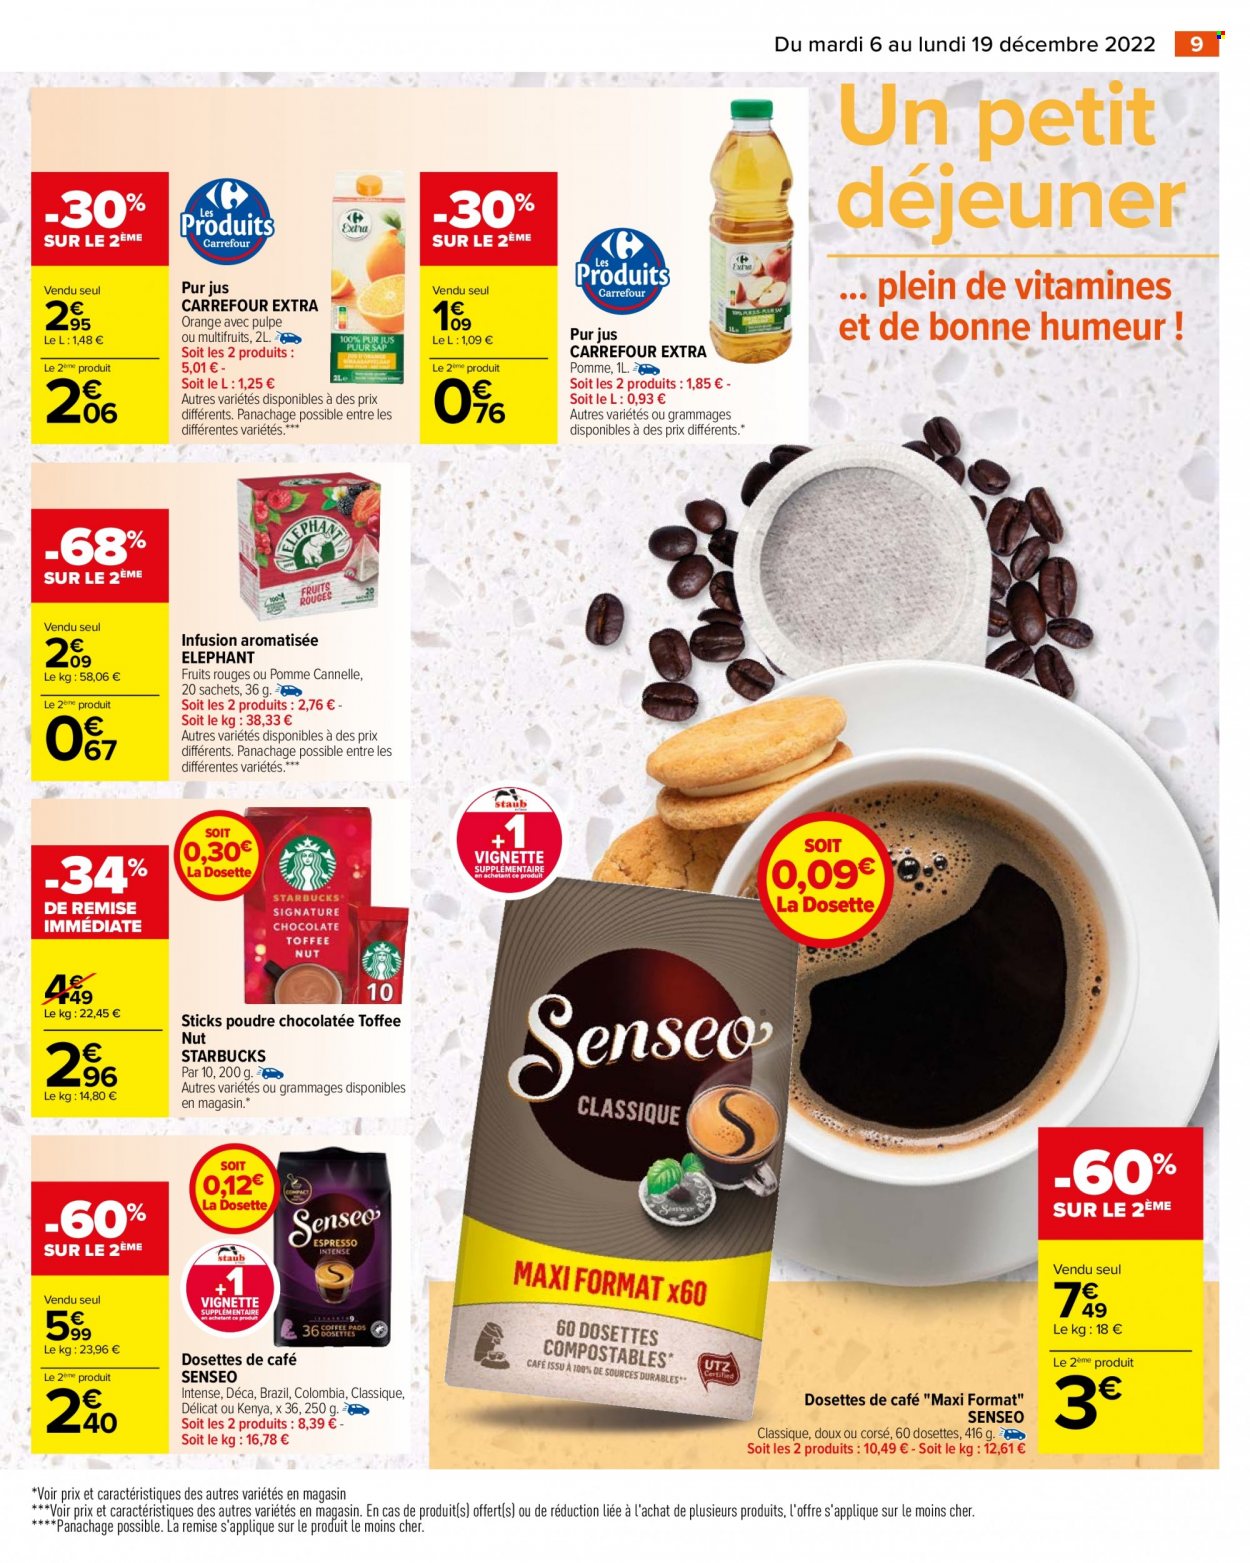 Catalogue Carrefour Hypermarchés - 06.12.2022 - 19.12.2022. 